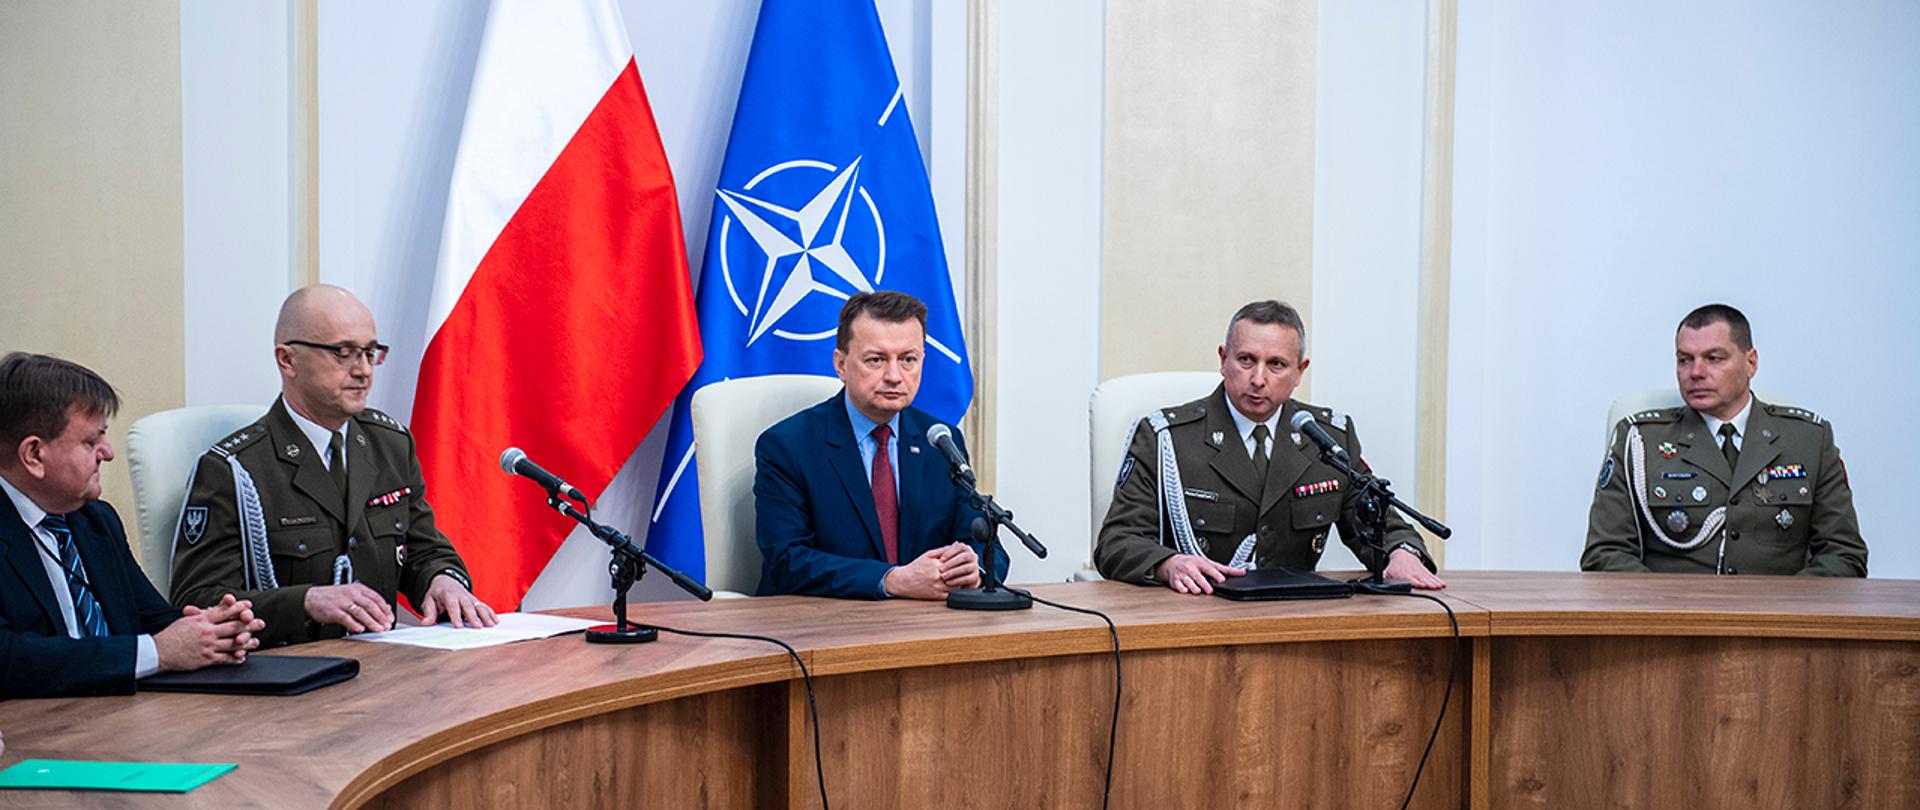 Szef MON siedzi przy stole z dowódcami Wojska Polskiego. Za nim flagi Polski i NATO.